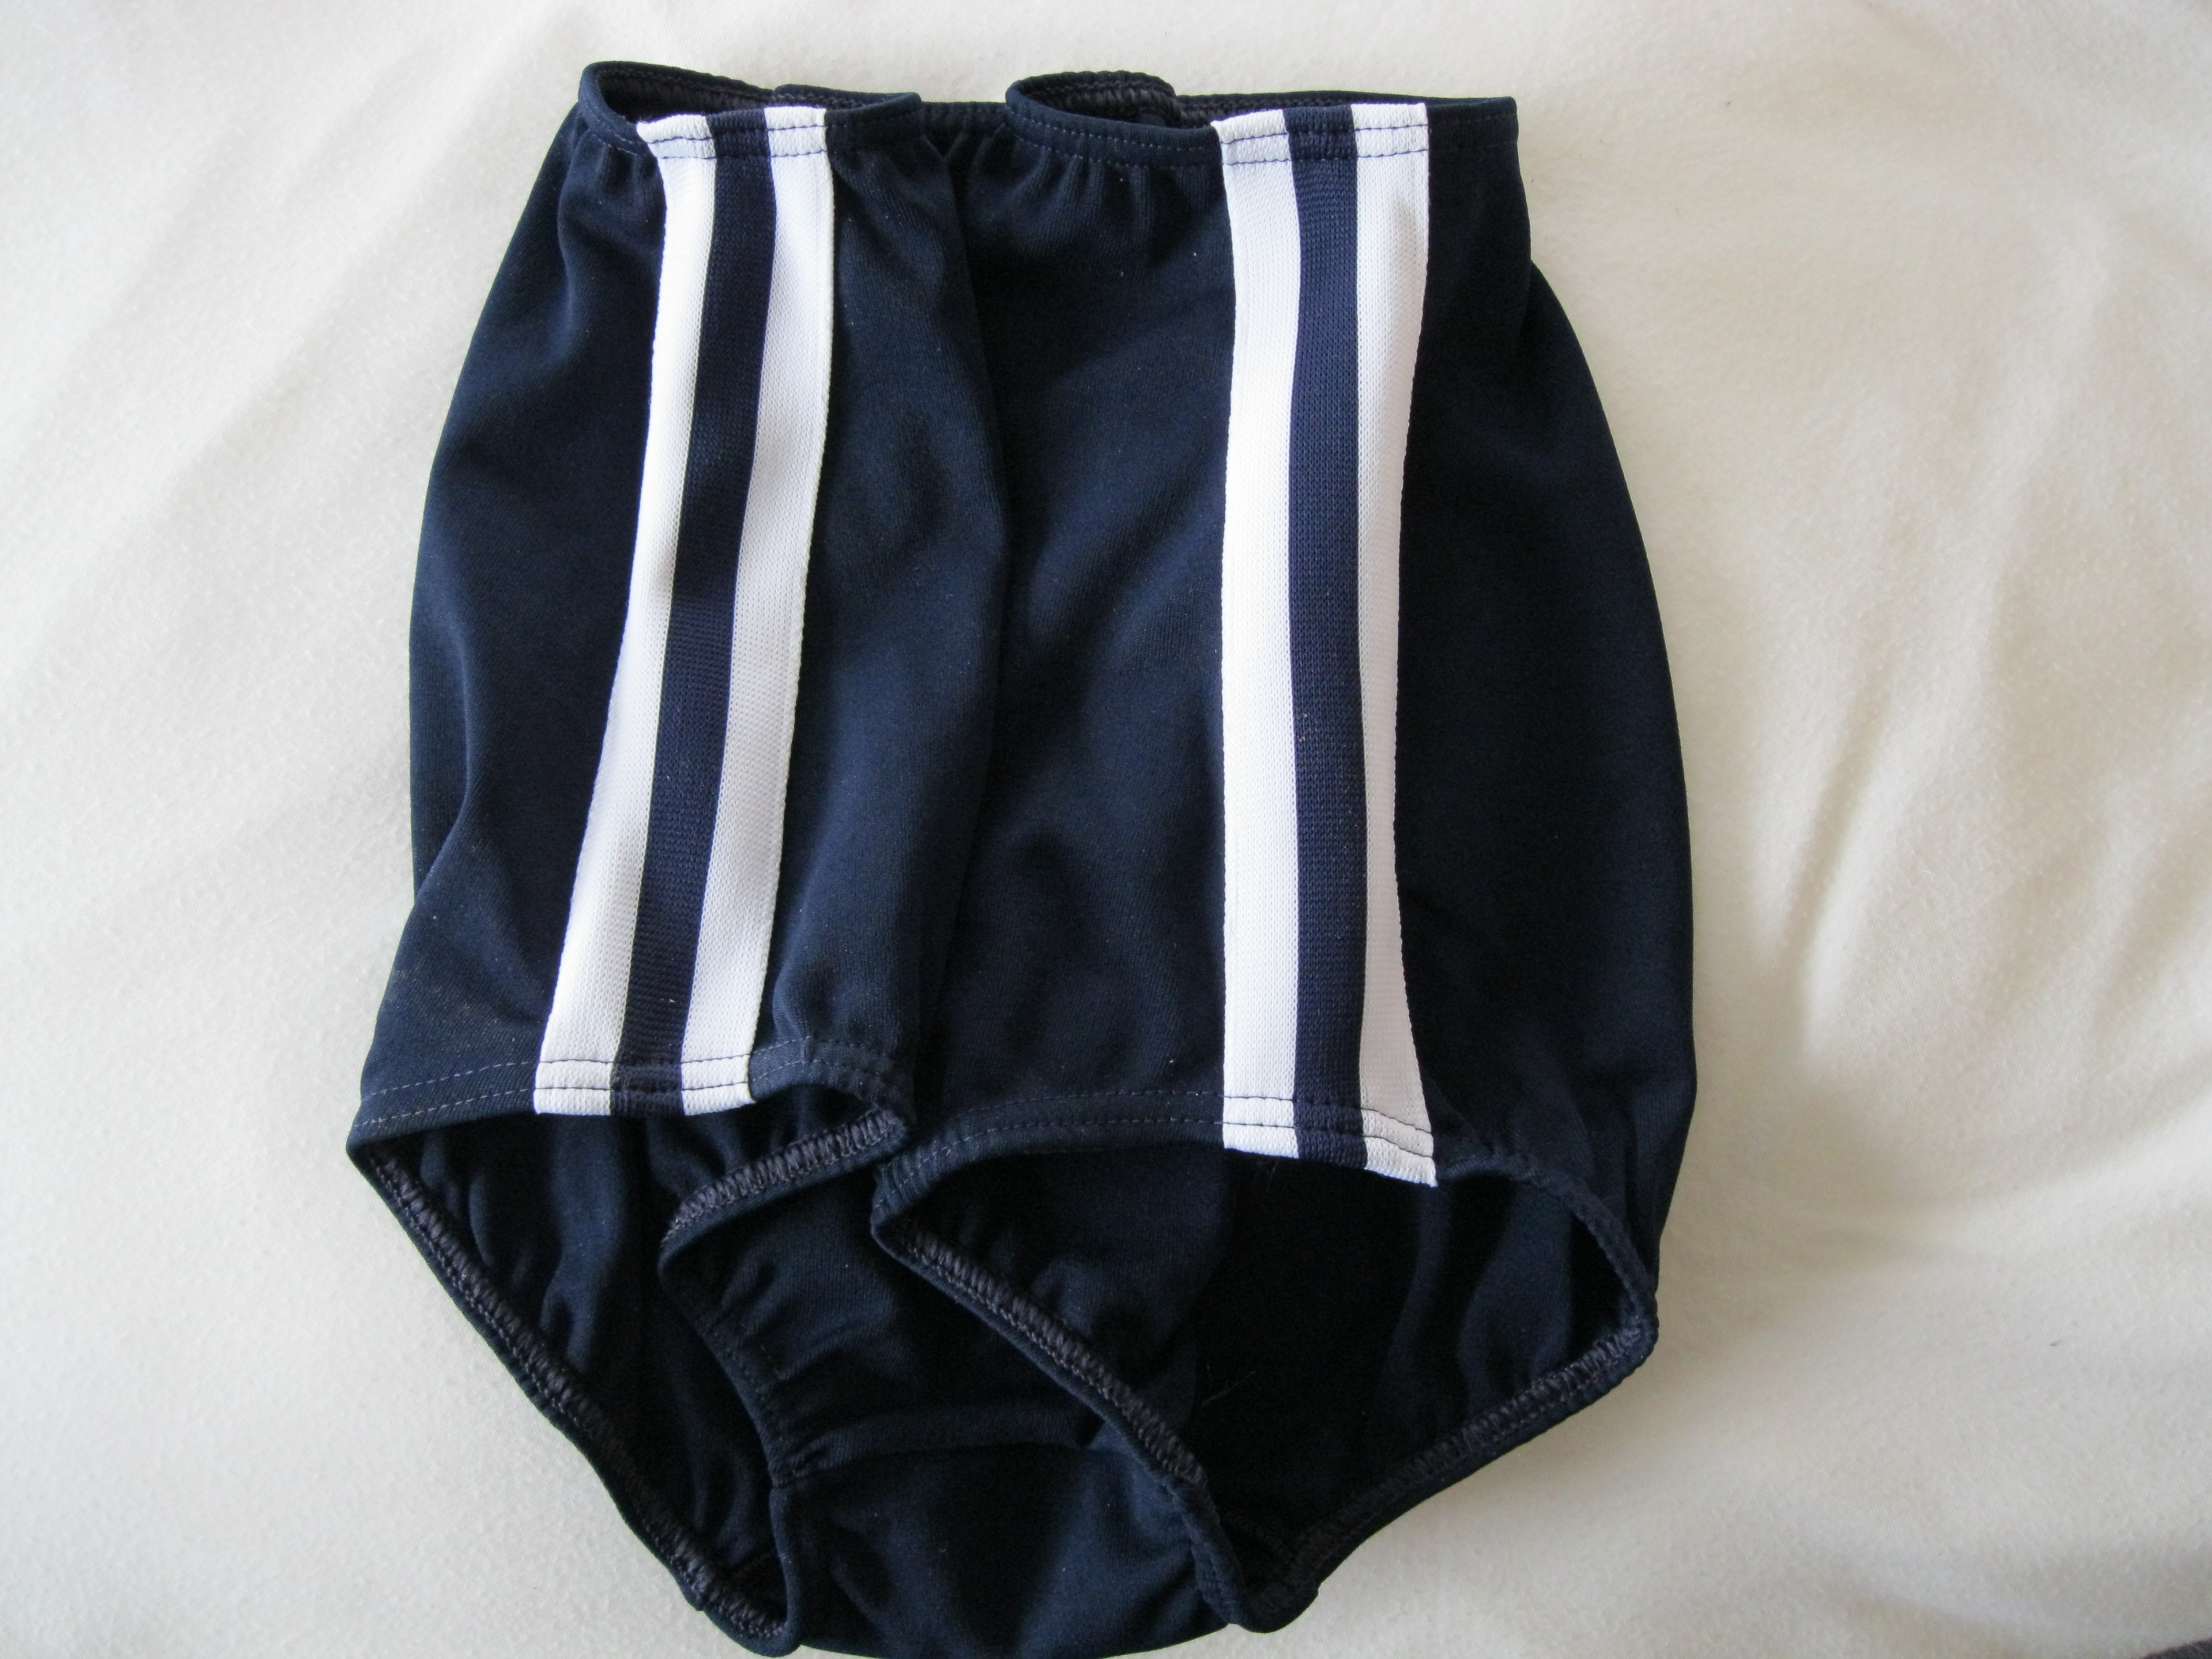 Girls Classic NAVY BLUE Gym Knickers (Athletics Shorts) BY GYMPHLEX Sizes  32 (XXL), 30 (XL), 28 (L), 26 (M), 24 (S), 22 (XS)